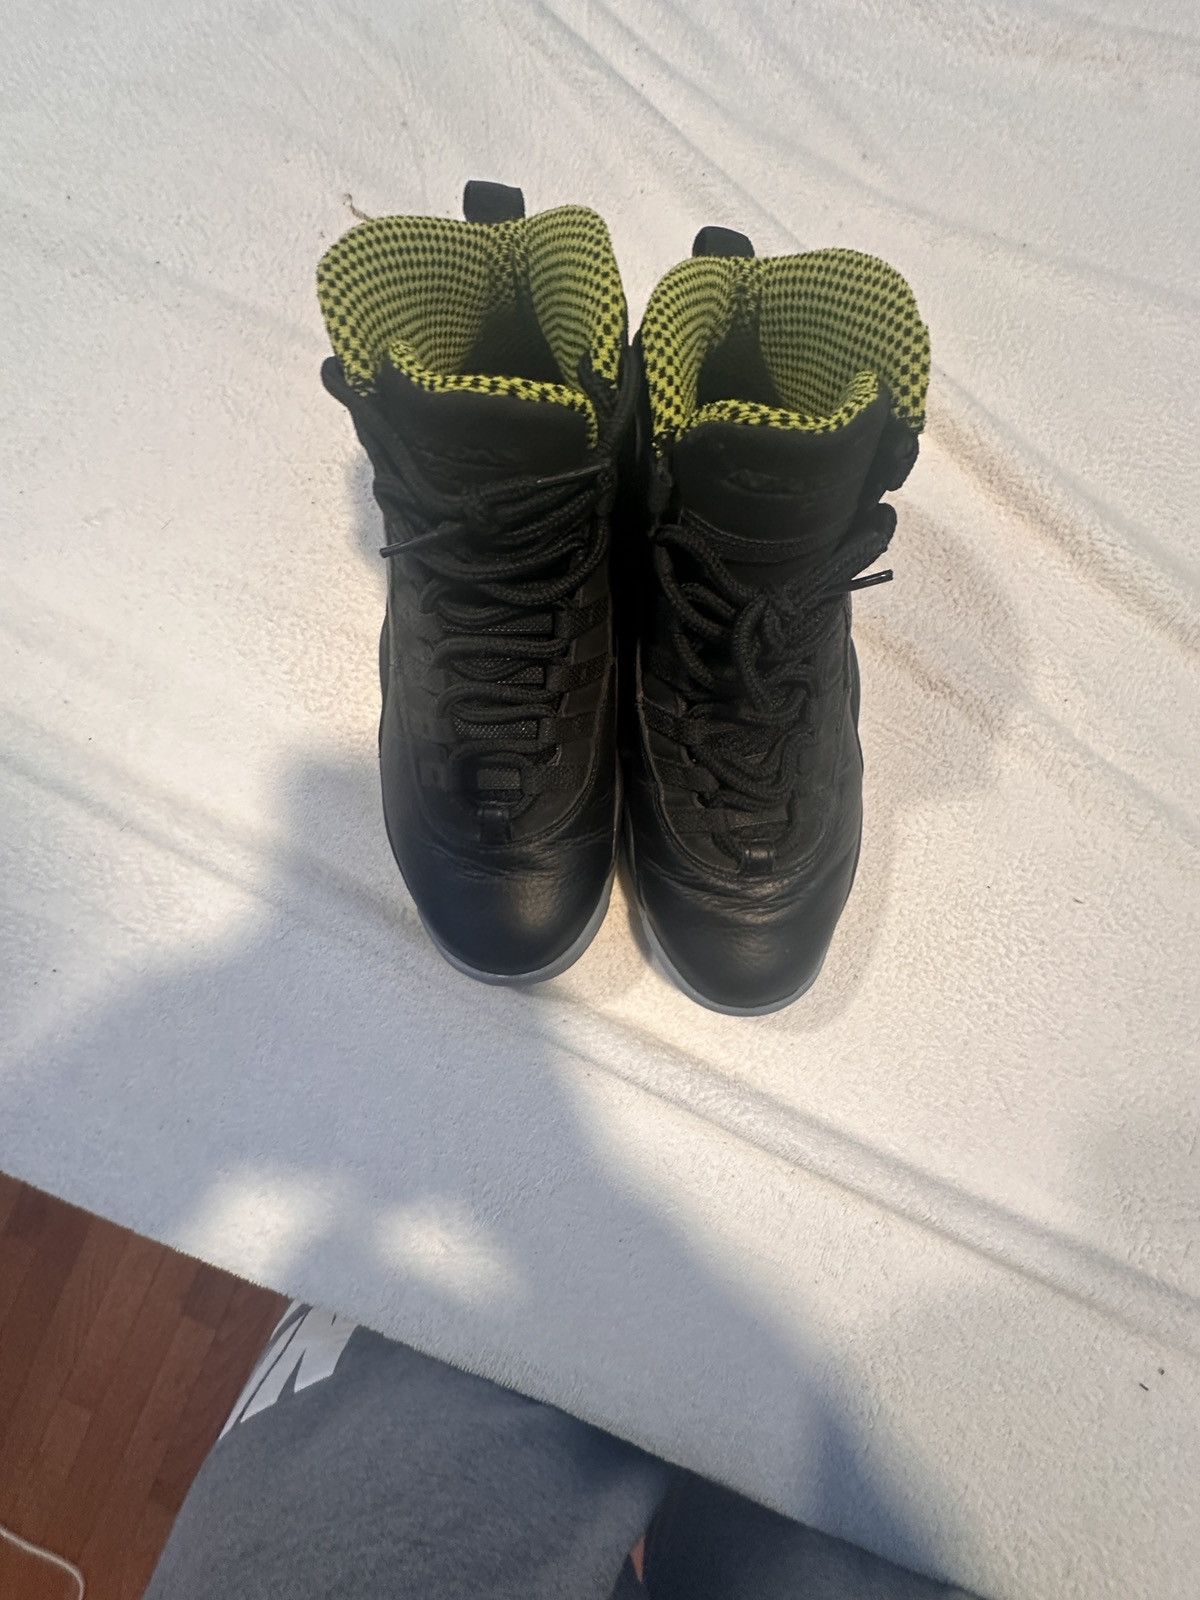 Nike Jordan retro 10 venoms Size US 8.5 / EU 41-42 - 10 Preview